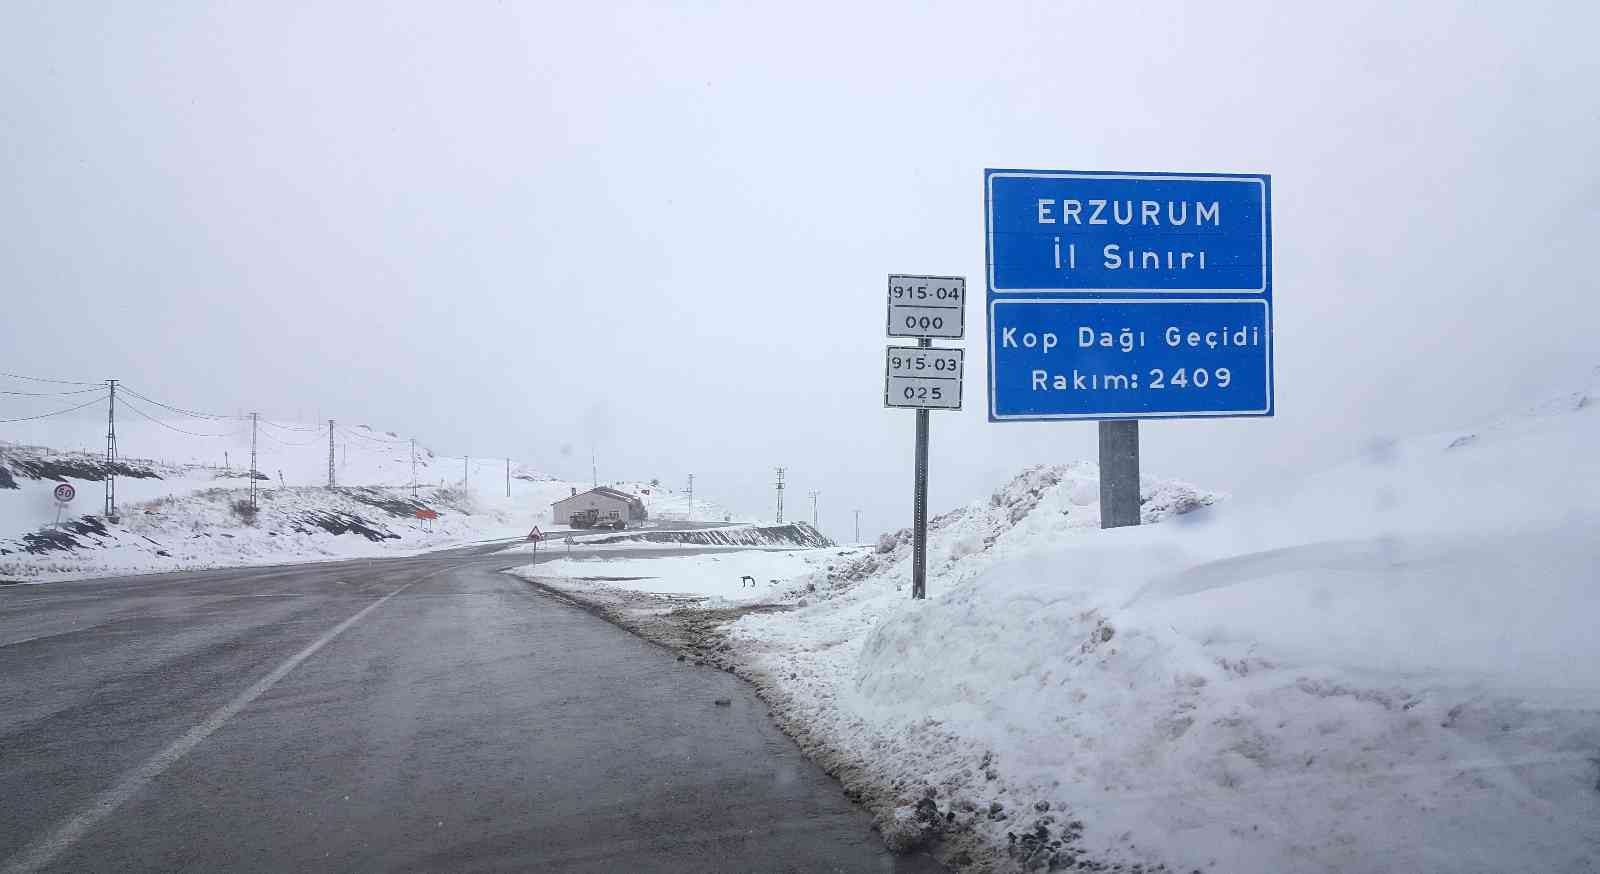 Kop Dağı Geçidinde kar ve tipi etkili oldu #bayburt